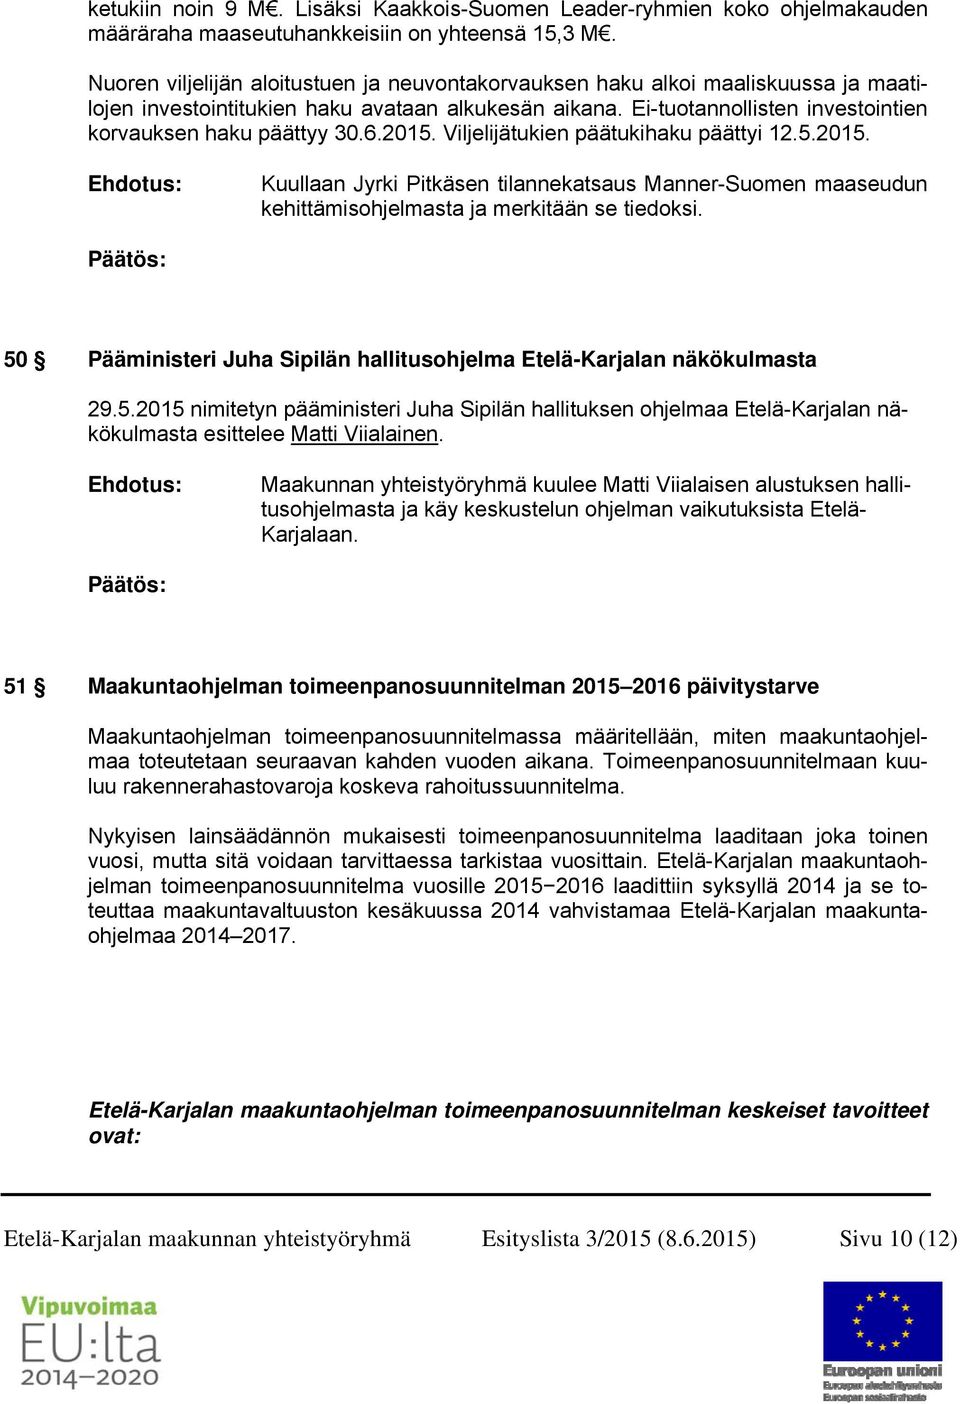 6.2015. Viljelijätukien päätukihaku päättyi 12.5.2015. Kuullaan Jyrki Pitkäsen tilannekatsaus Manner-Suomen maaseudun kehittämisohjelmasta ja merkitään se tiedoksi.